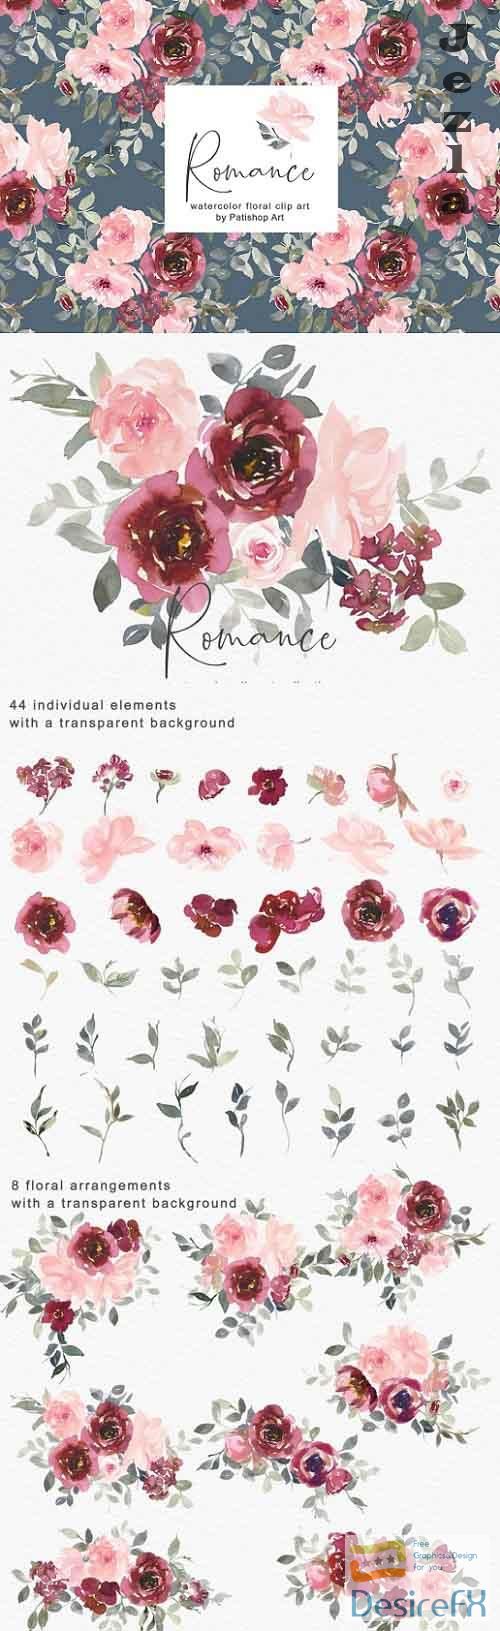 Blush & Burgundy Watercolor Floral Clip Art Set - 580713